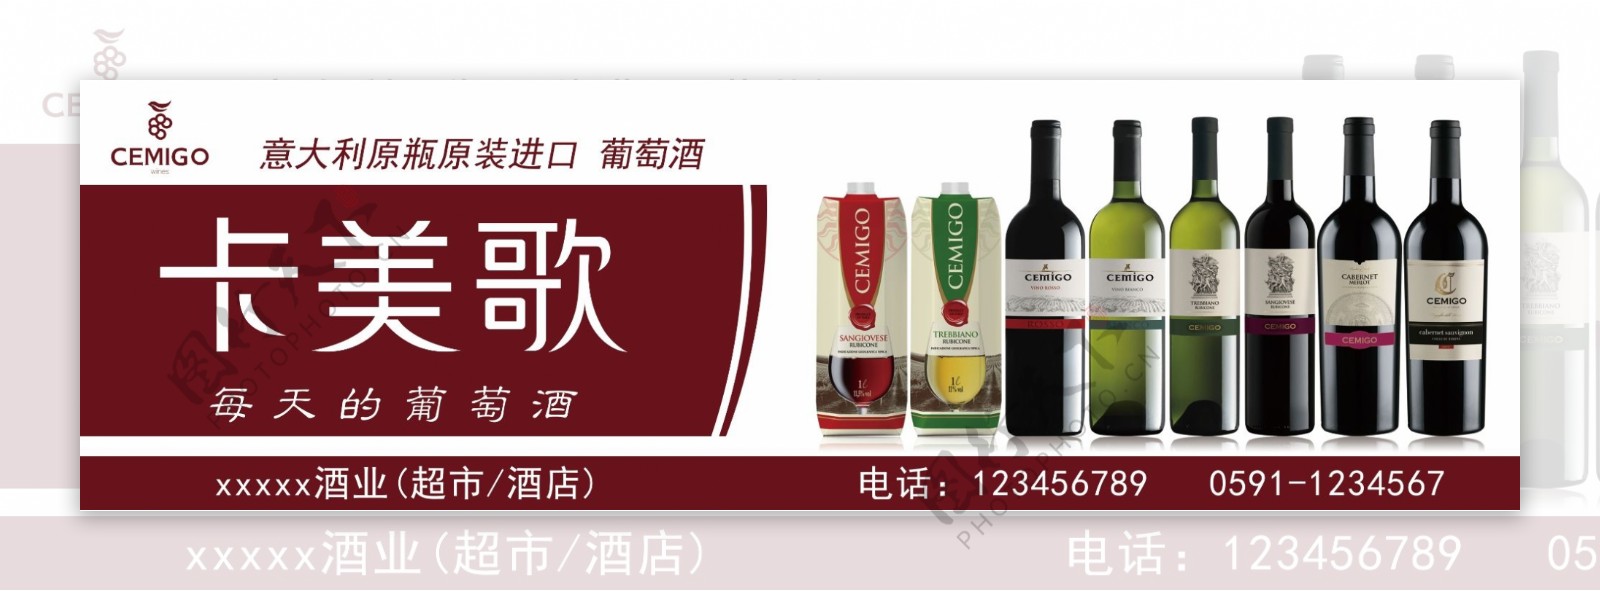 卡美歌葡萄酒广告